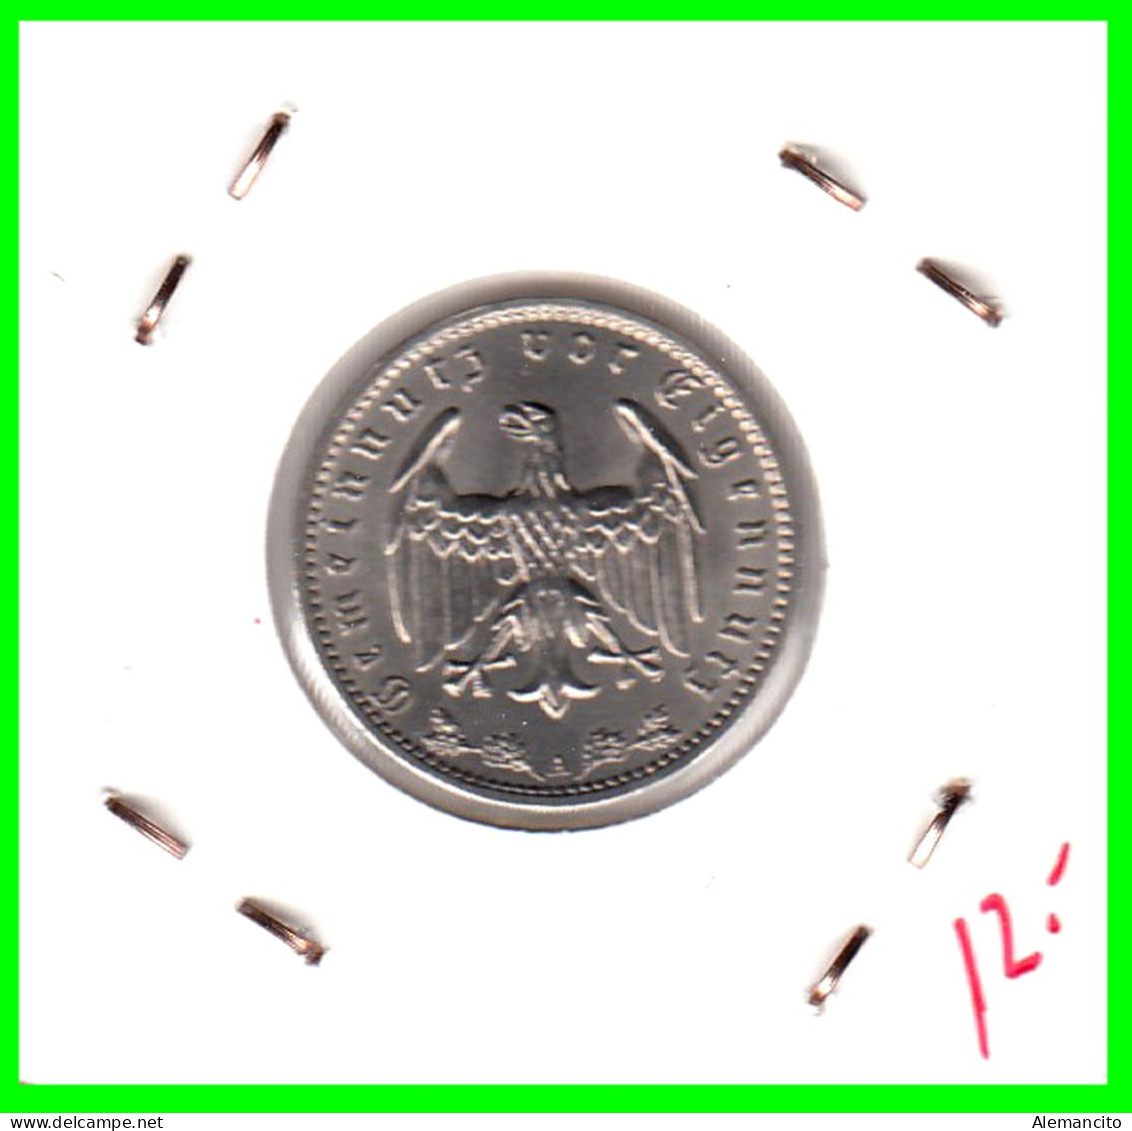 GERMANY TERCER REICH 1 REICHSMARK SIN CIRCULAR( 1935 CECA - A )  ( DEUTSCHES REICHSMARK KM # 78 ) - 1 Reichsmark